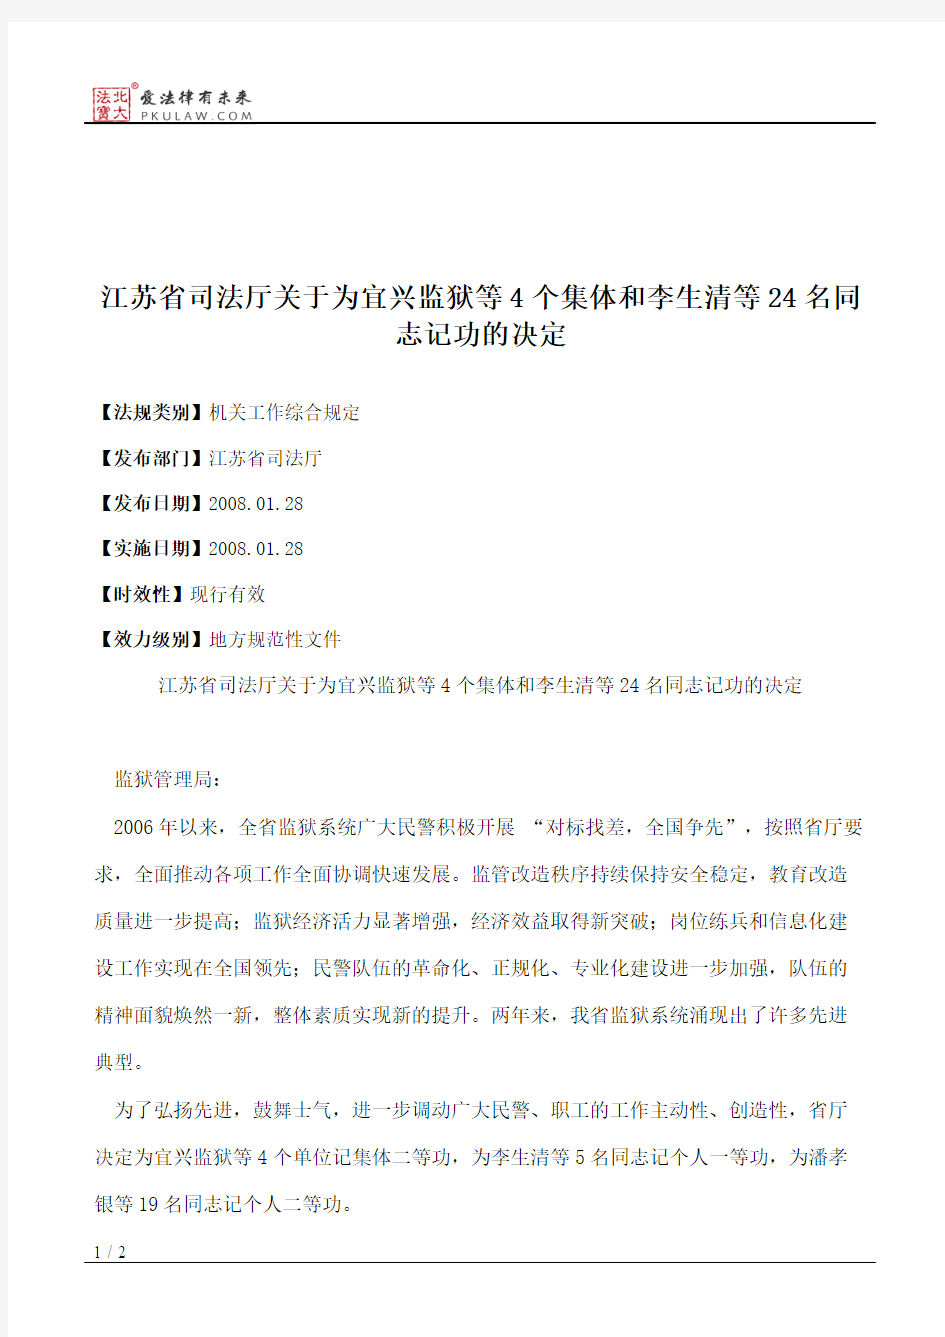 江苏省司法厅关于为宜兴监狱等4个集体和李生清等24名同志记功的决定